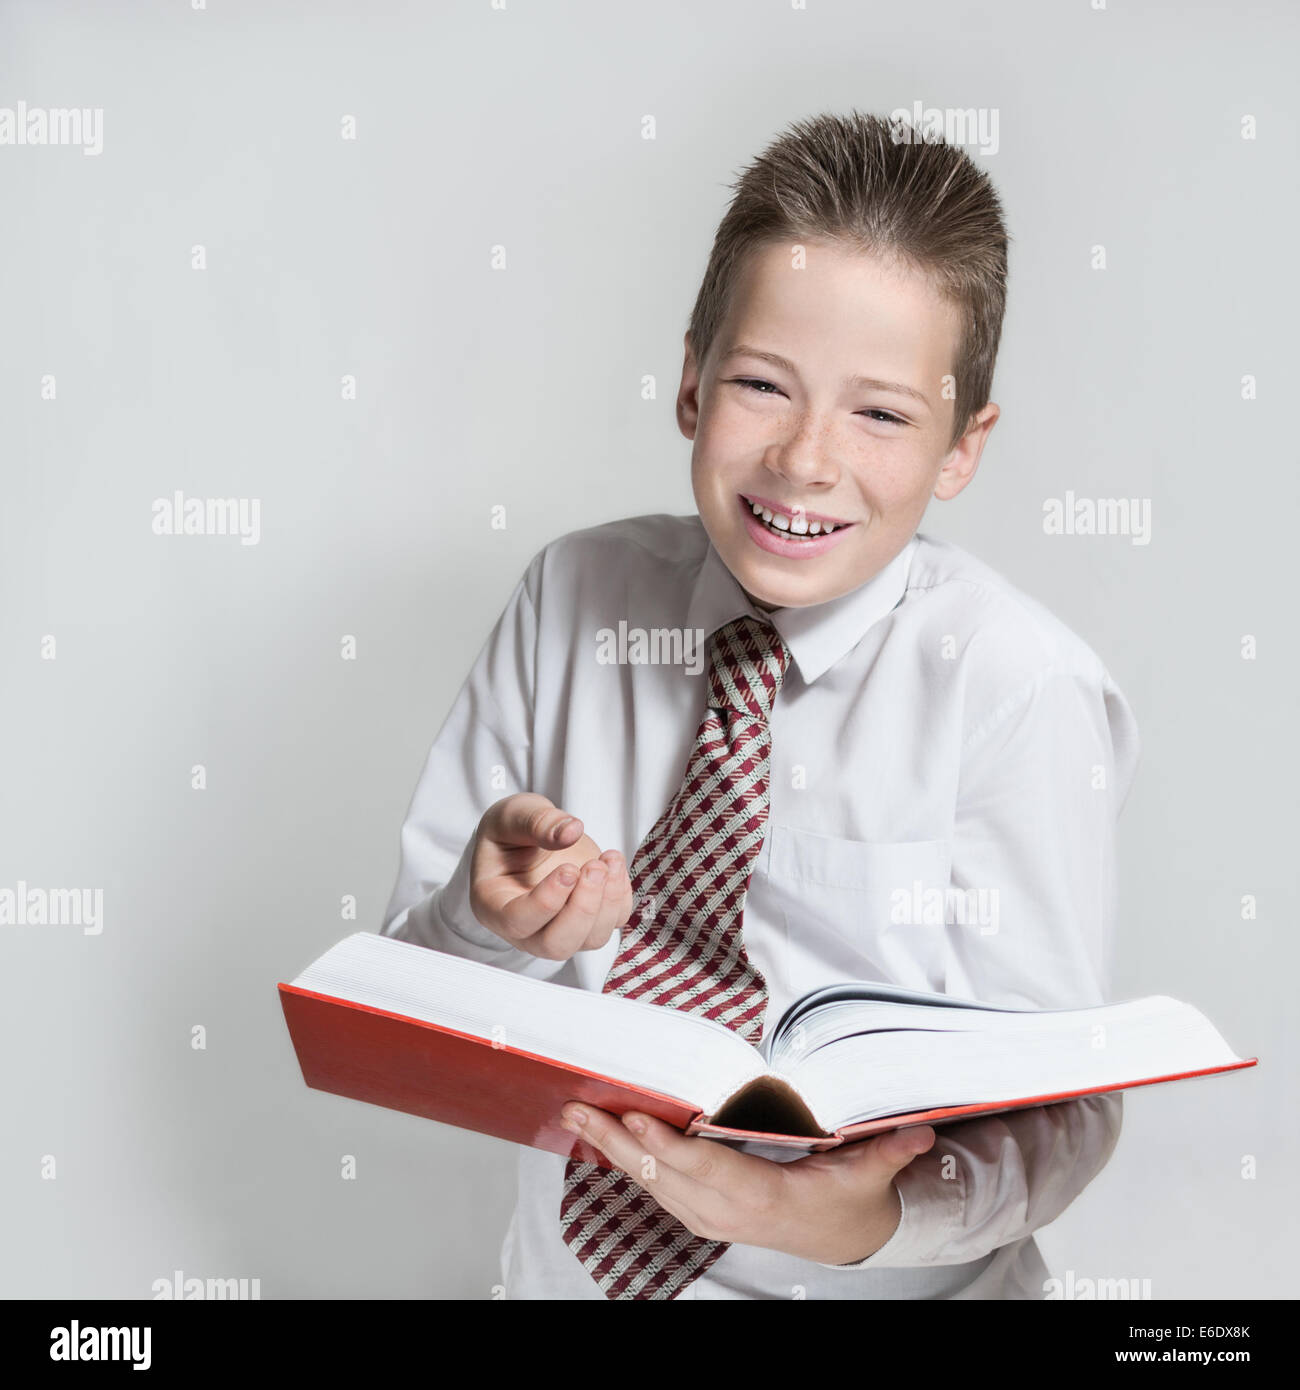 Die lächelnde junge Teenager in ein weißes Hemd und eine Krawatte liest ein große rote lustiges Buch Stockfoto